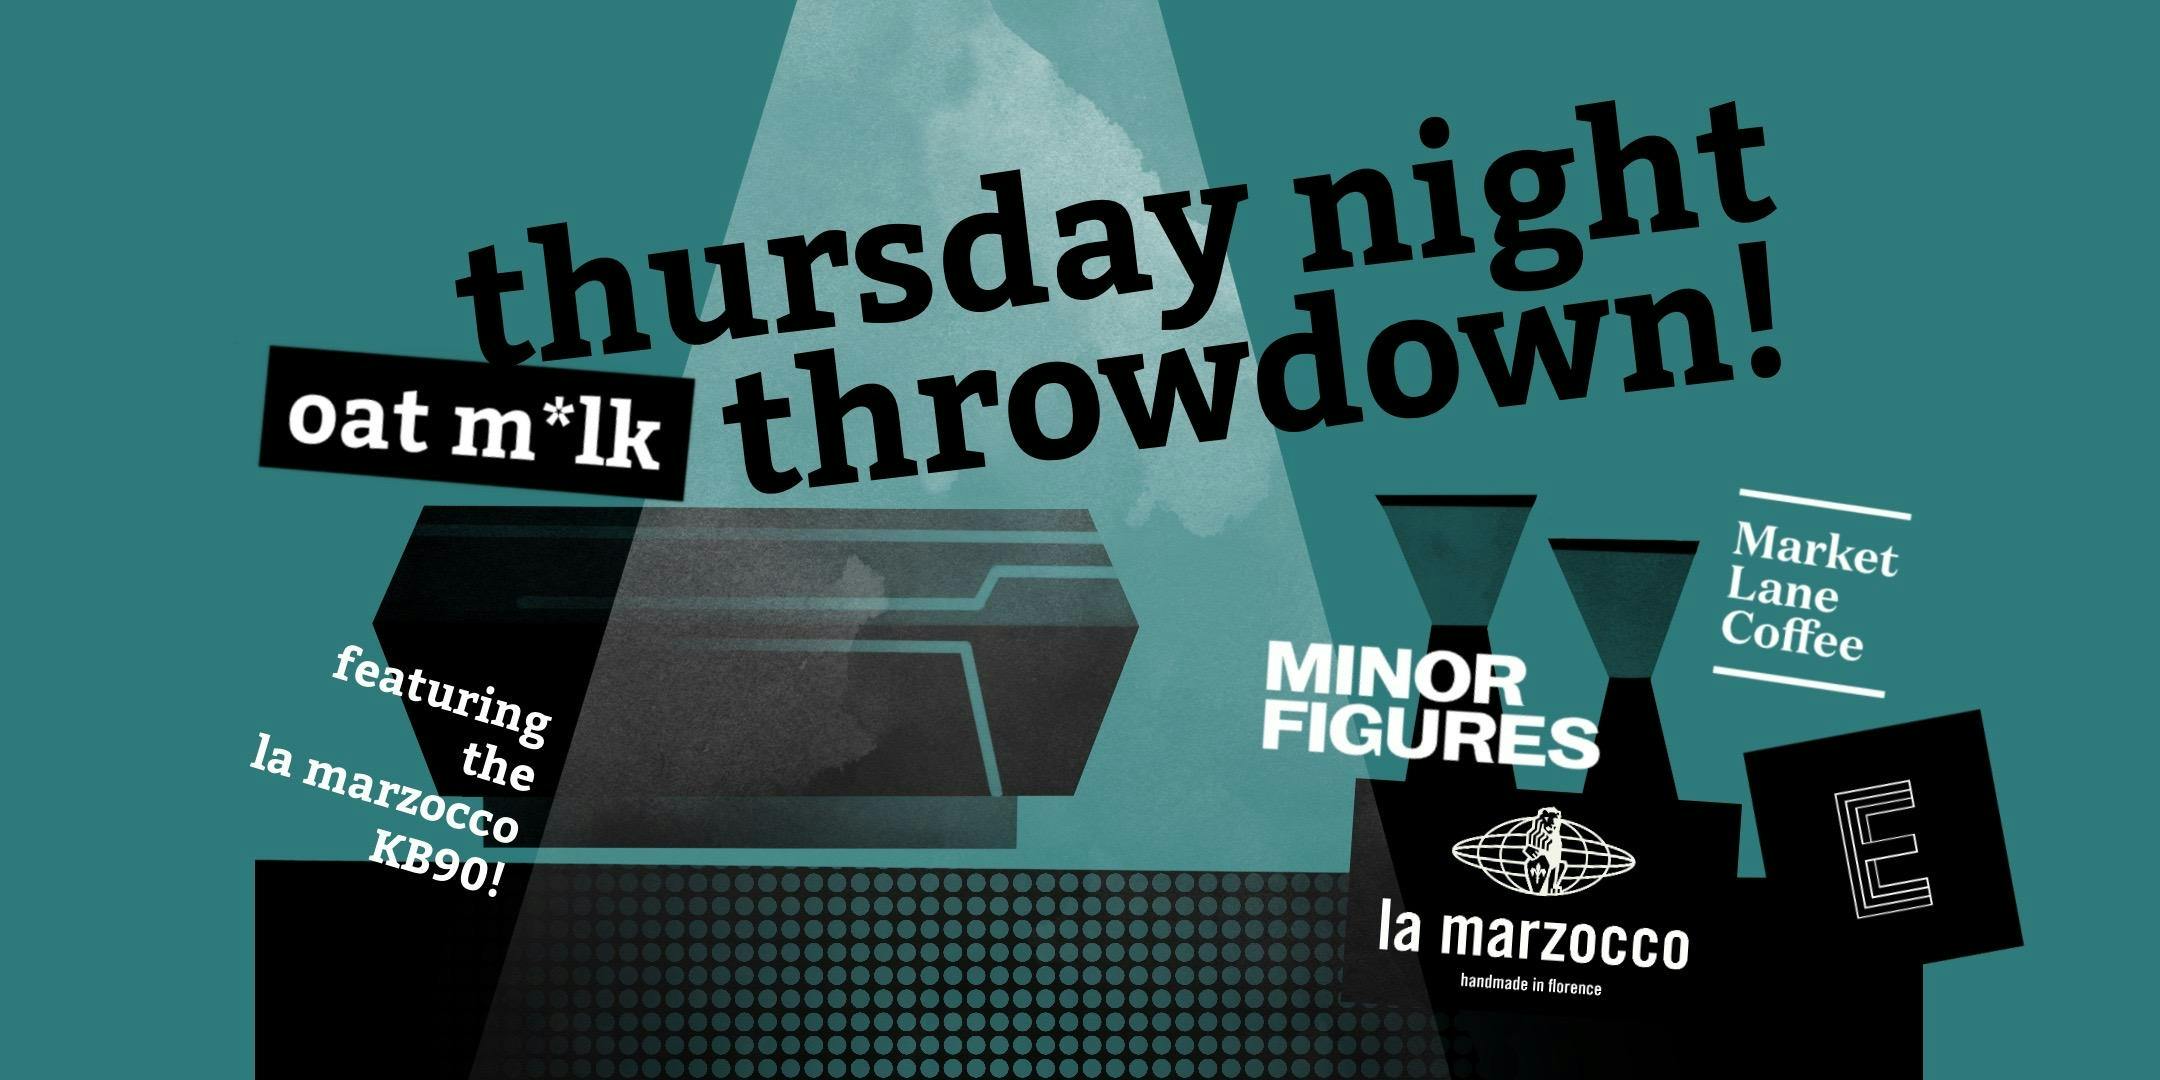 Thursday Night (Oat M*lk) Throwdown